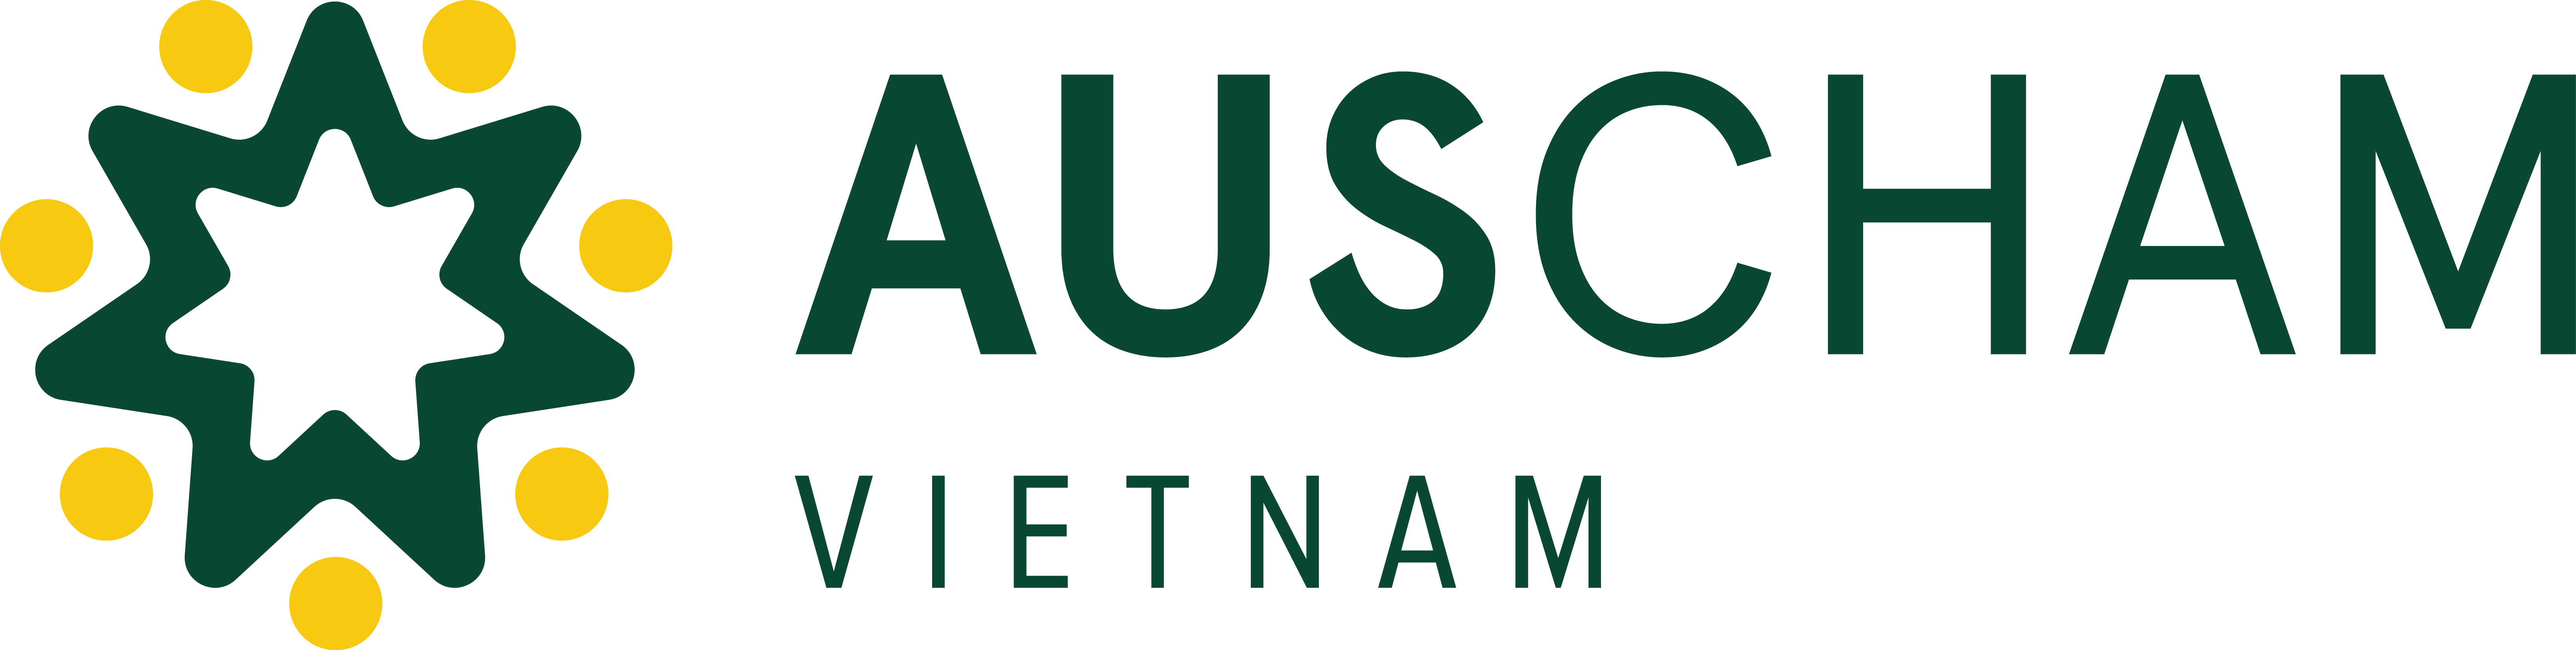 AusCham logo transparent background